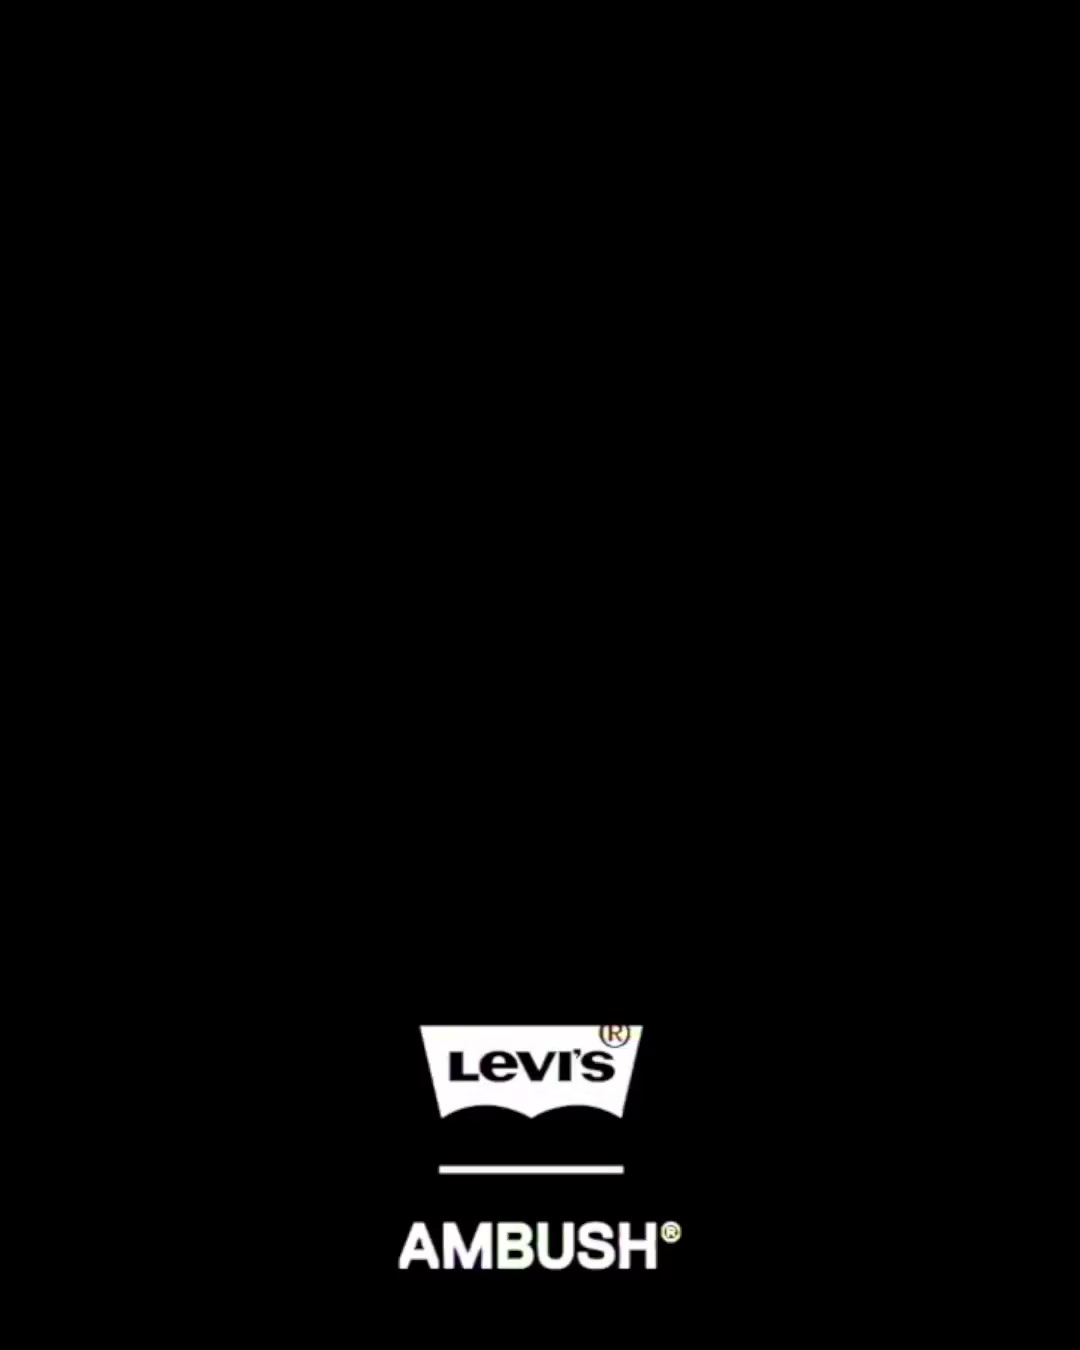 【1/12 発売】AMBUSH × Levi’s 2023 S/S コラボレーション (アンブッシュ リーバイス)